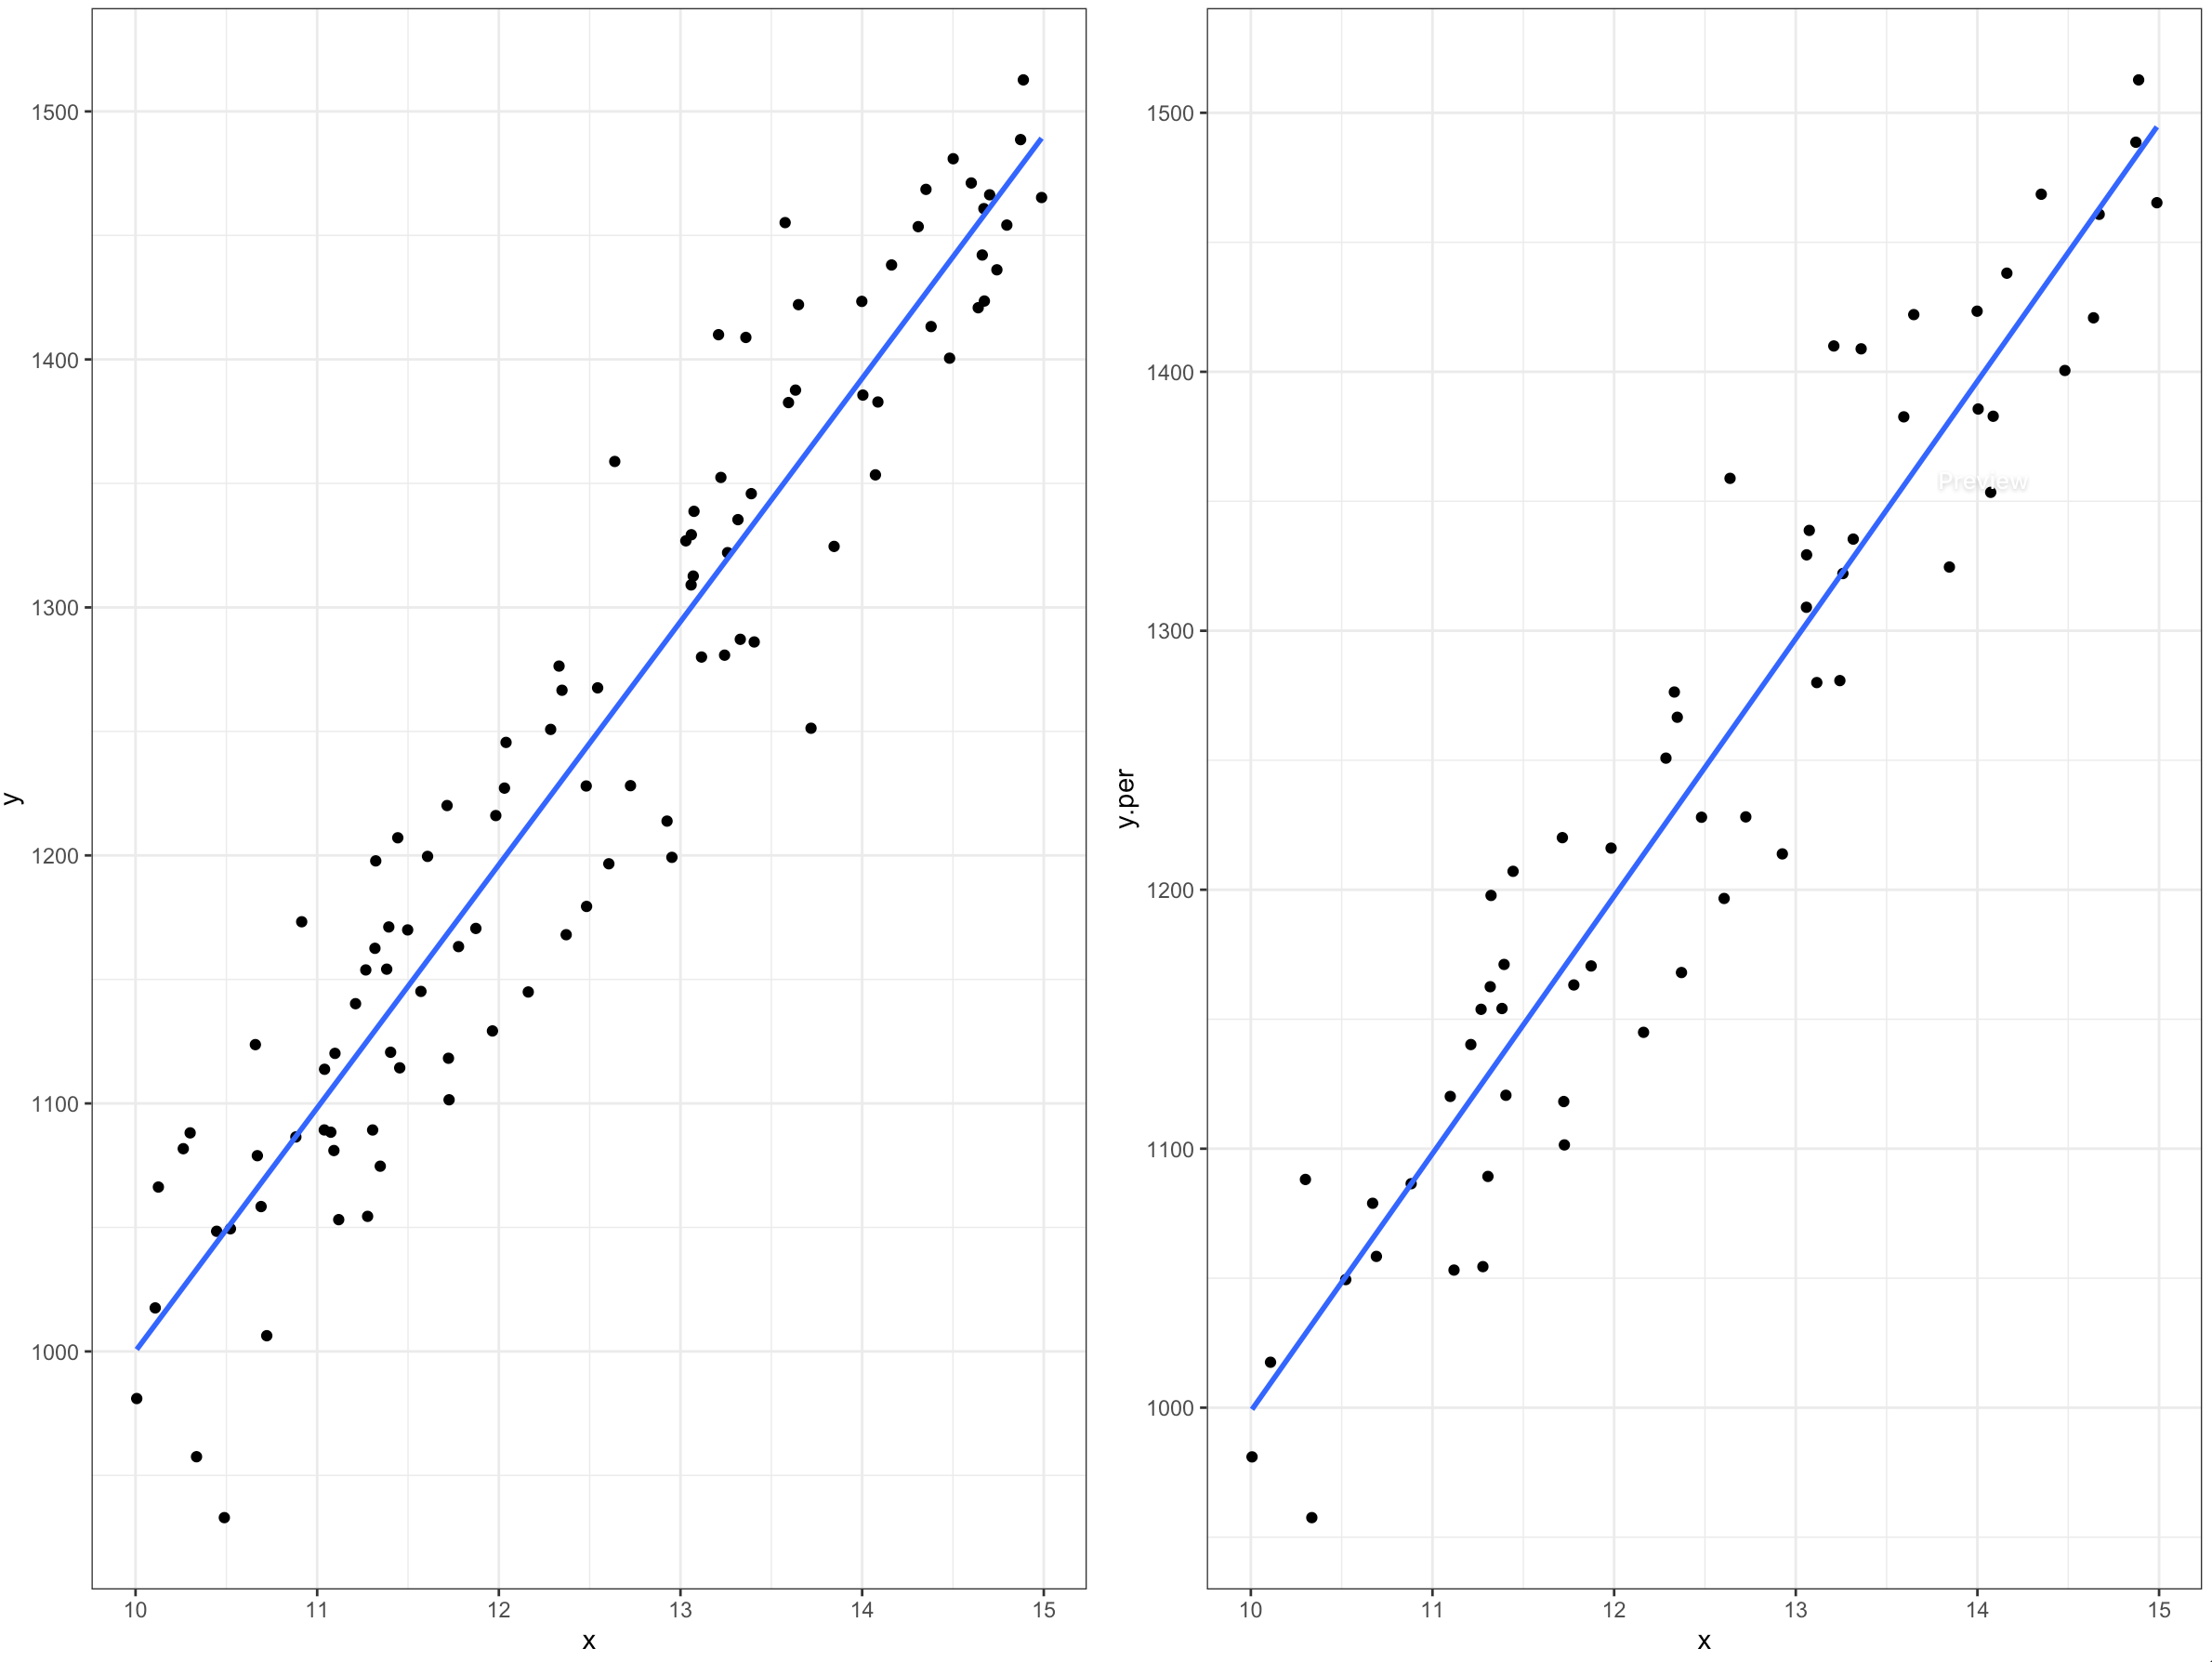 Relación de la variable de interés para los datos completos (izquierda) y con ausencia de valores (derecha).